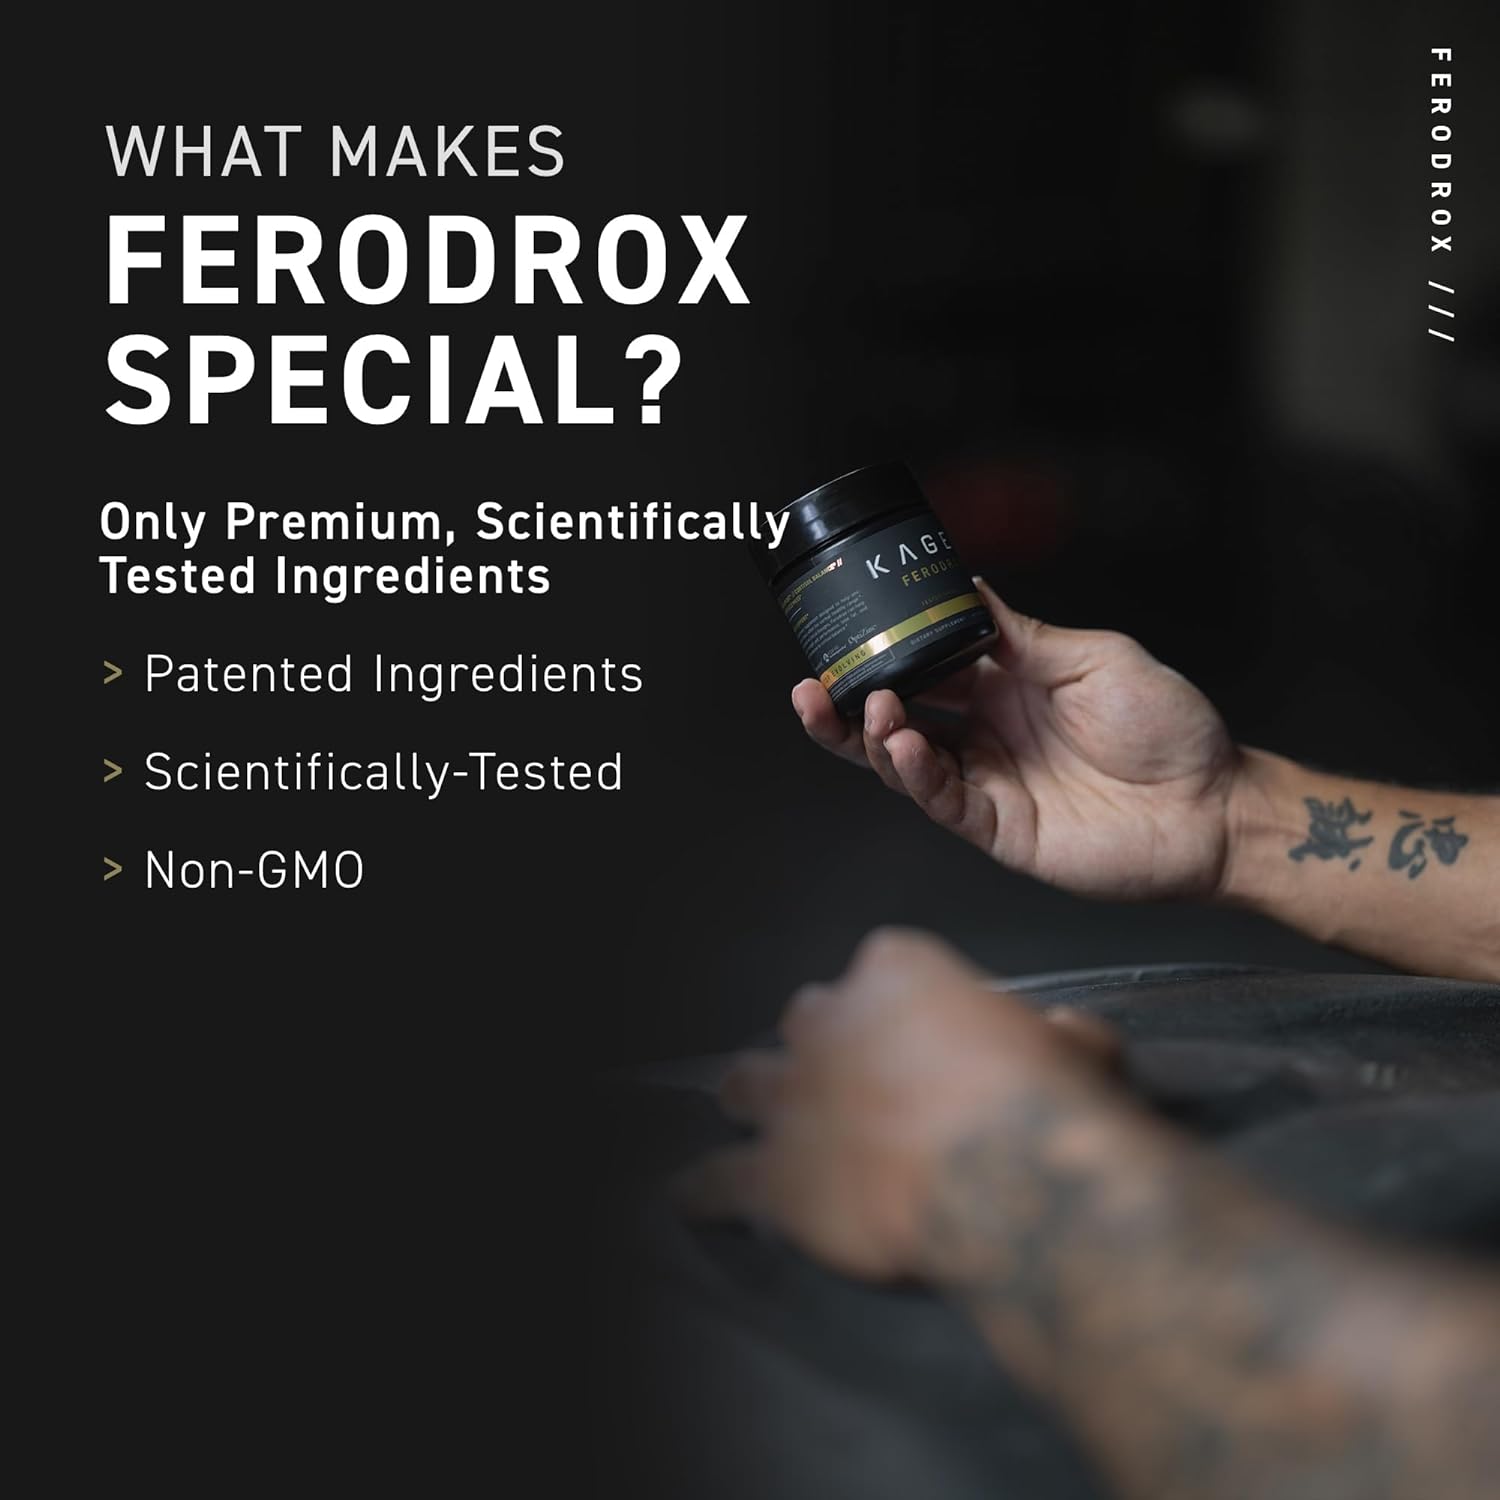 Kaged Testosterone Booster | Ferodrox | Ultra-Premium Hormone Manageme